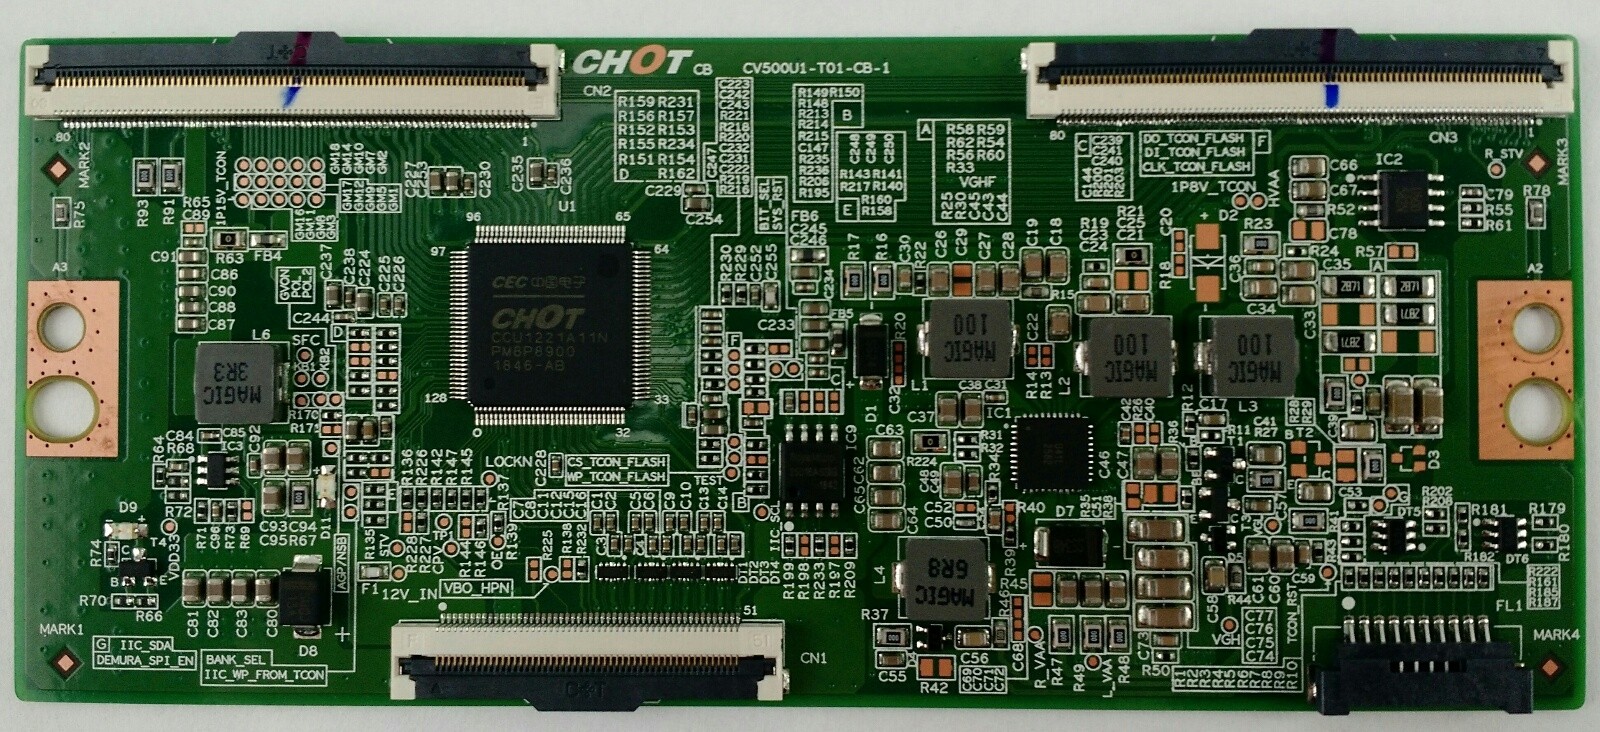 Hisense Replacement T-Con Board CV500U1-T01-CB-1 for 50R6E TV